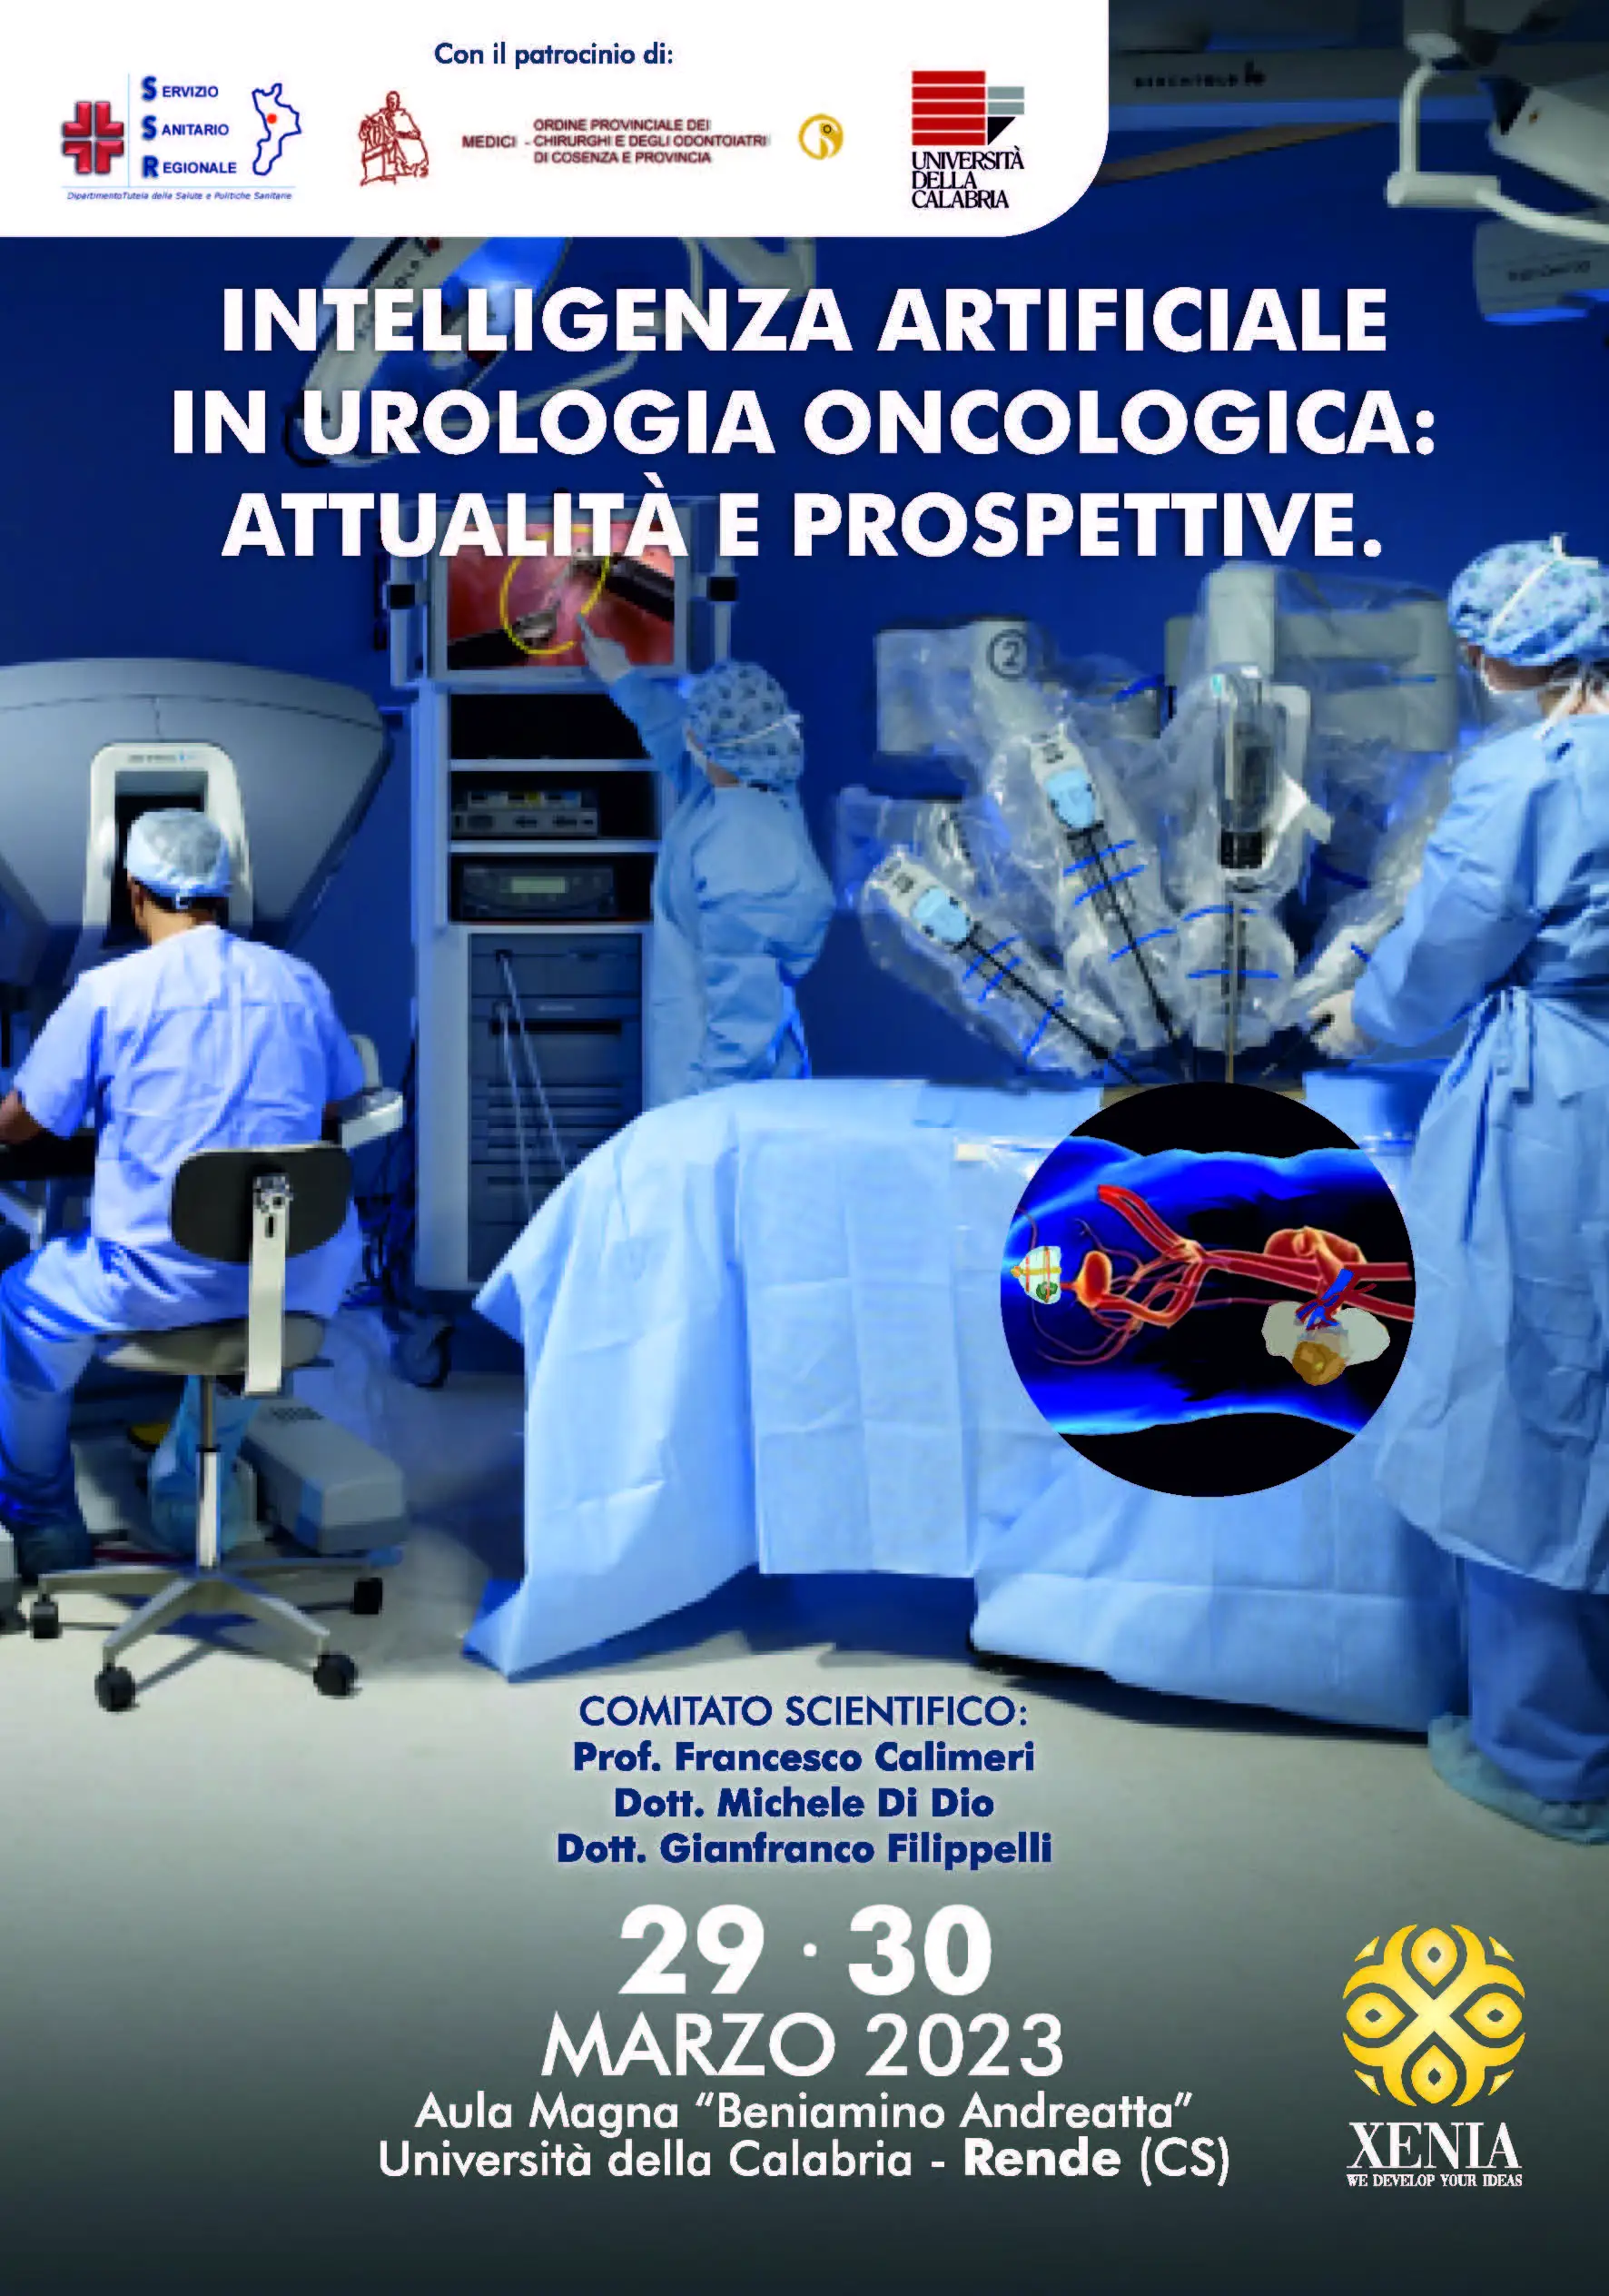 Convegno 29-30 marzo 2023 - Intelligenza artificiale in urologia oncologica: attualità e prospettive